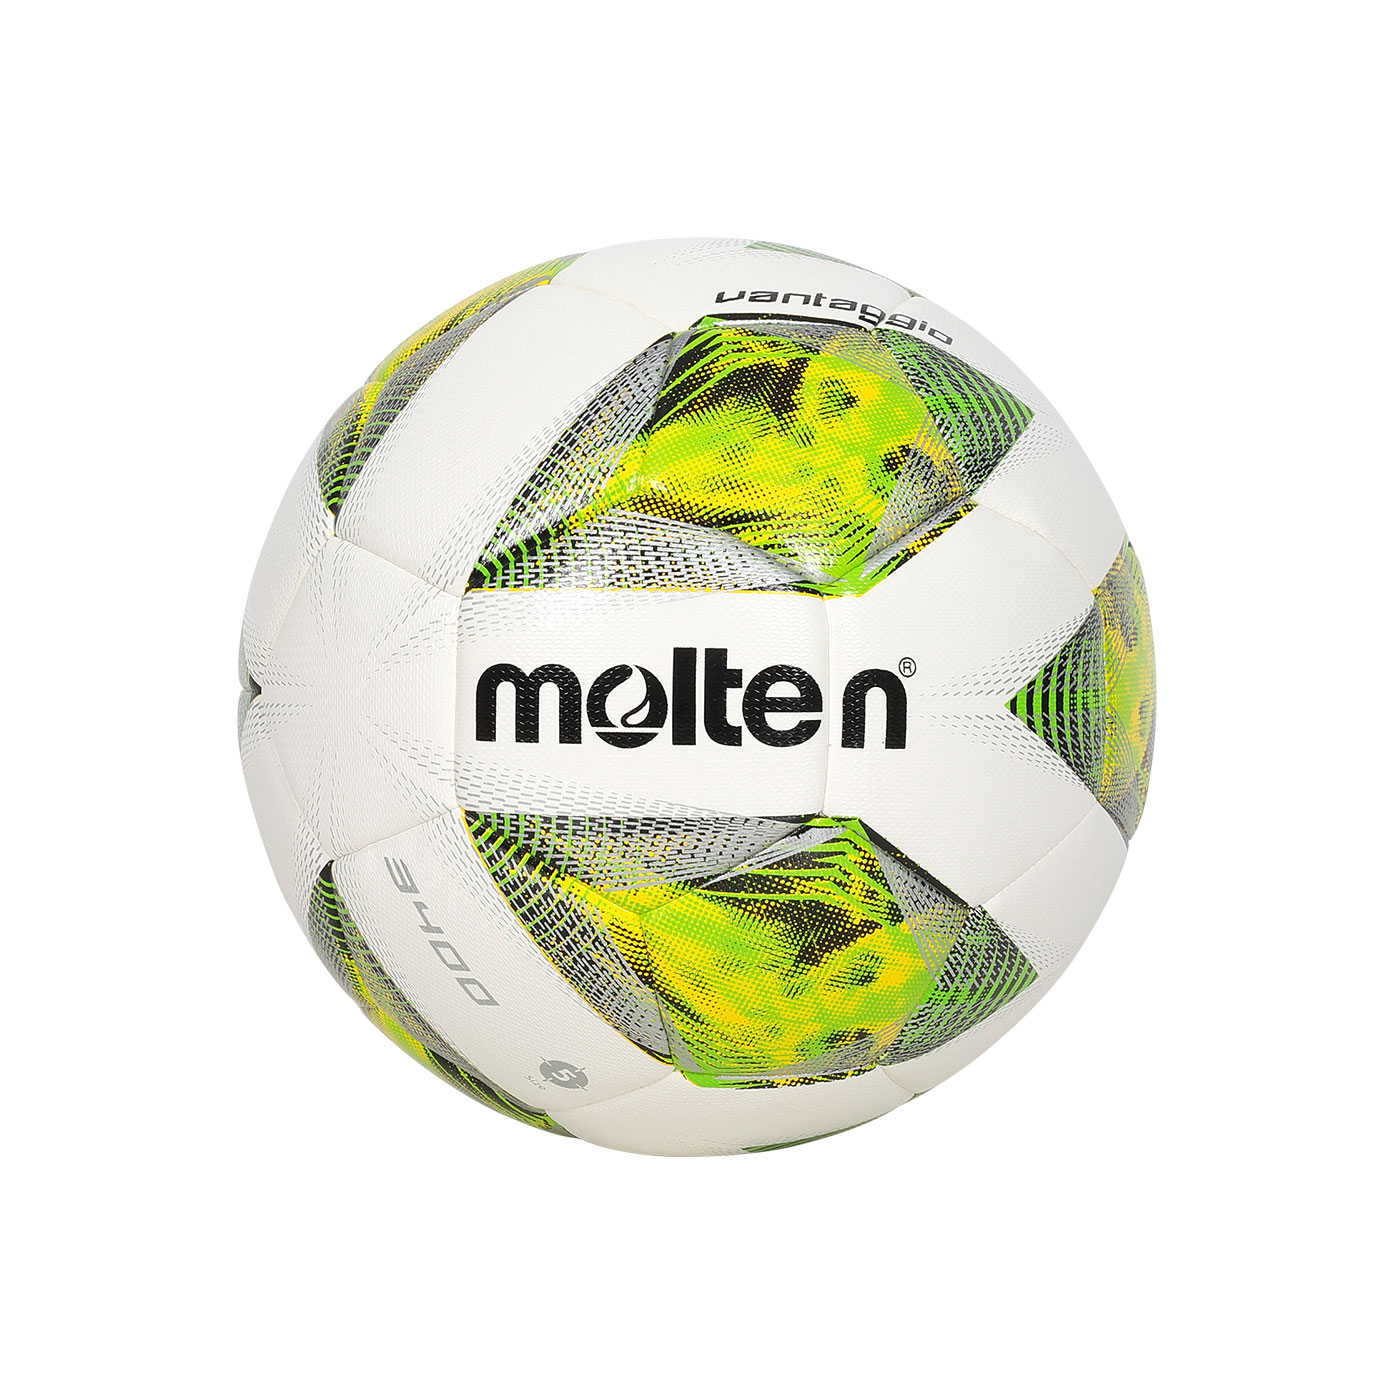 Molten #5合成皮足球(機縫無接縫)  F5A3400-G - 白綠黃銀